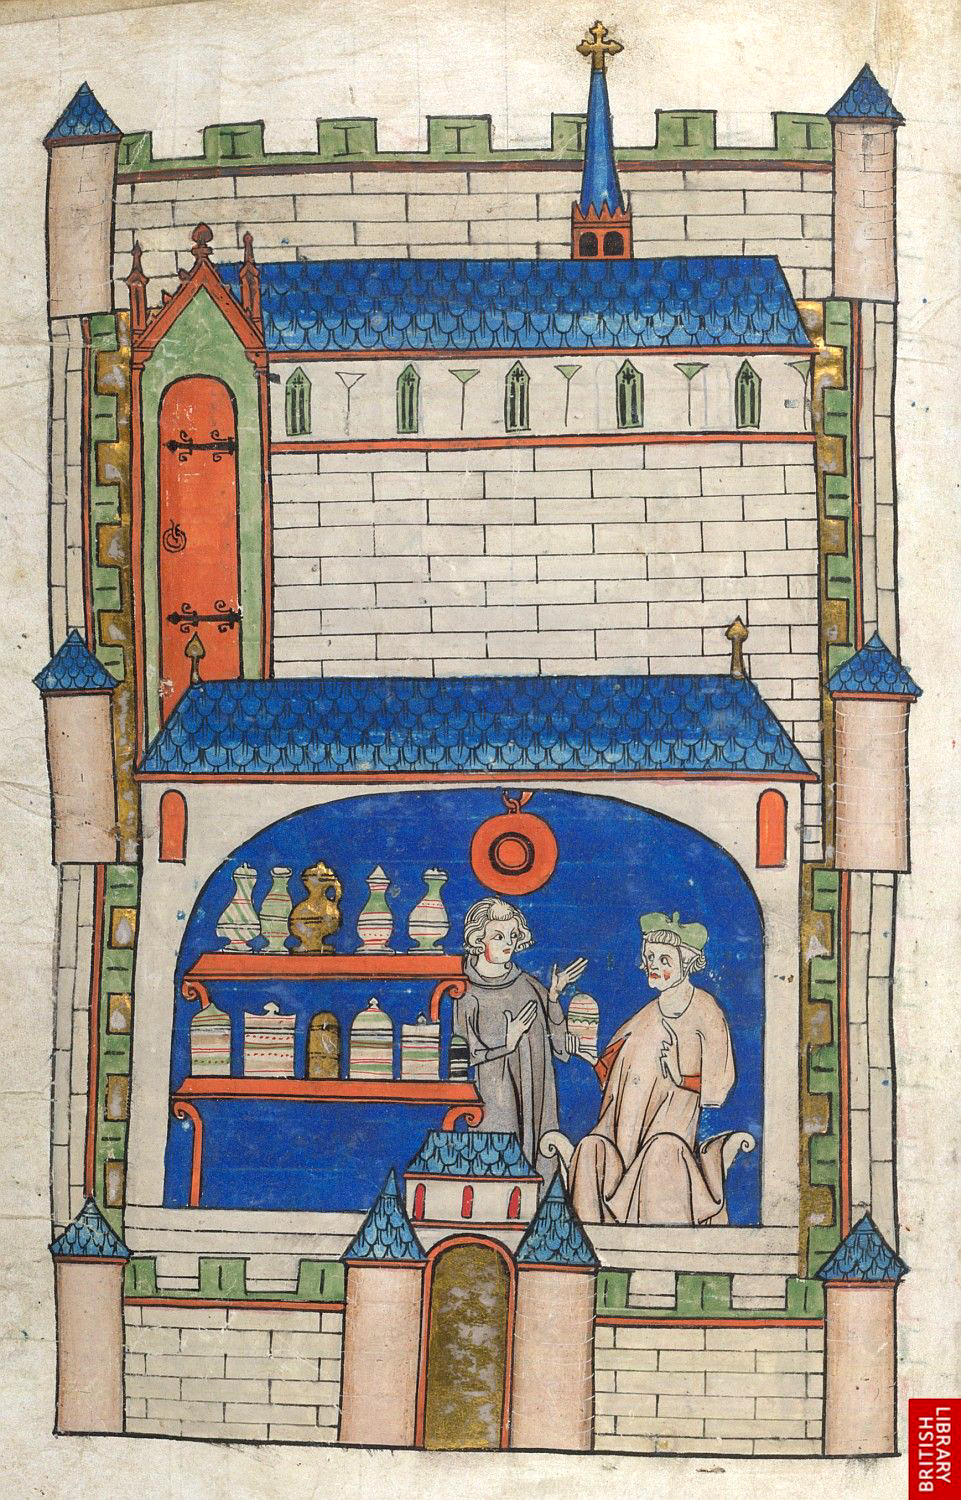 Ilustração colorida e antiga de uma construção que lembra um castelo. Em destaque, há 2 pessoas dentro de uma farmácia. Há duas prateleiras e frascos diversos sobre elas.